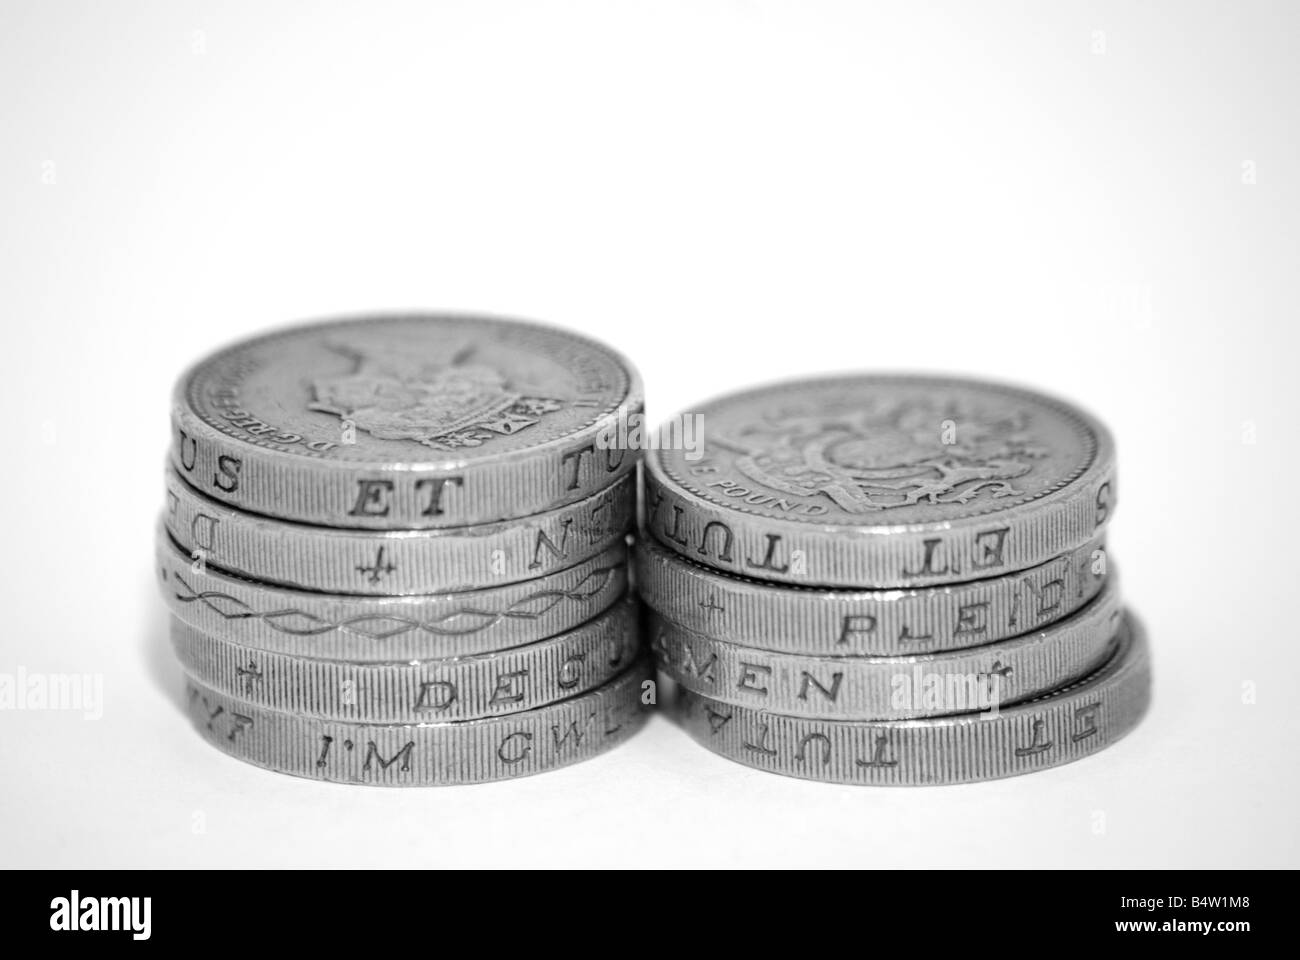 Pound Coins UK Stock Photo